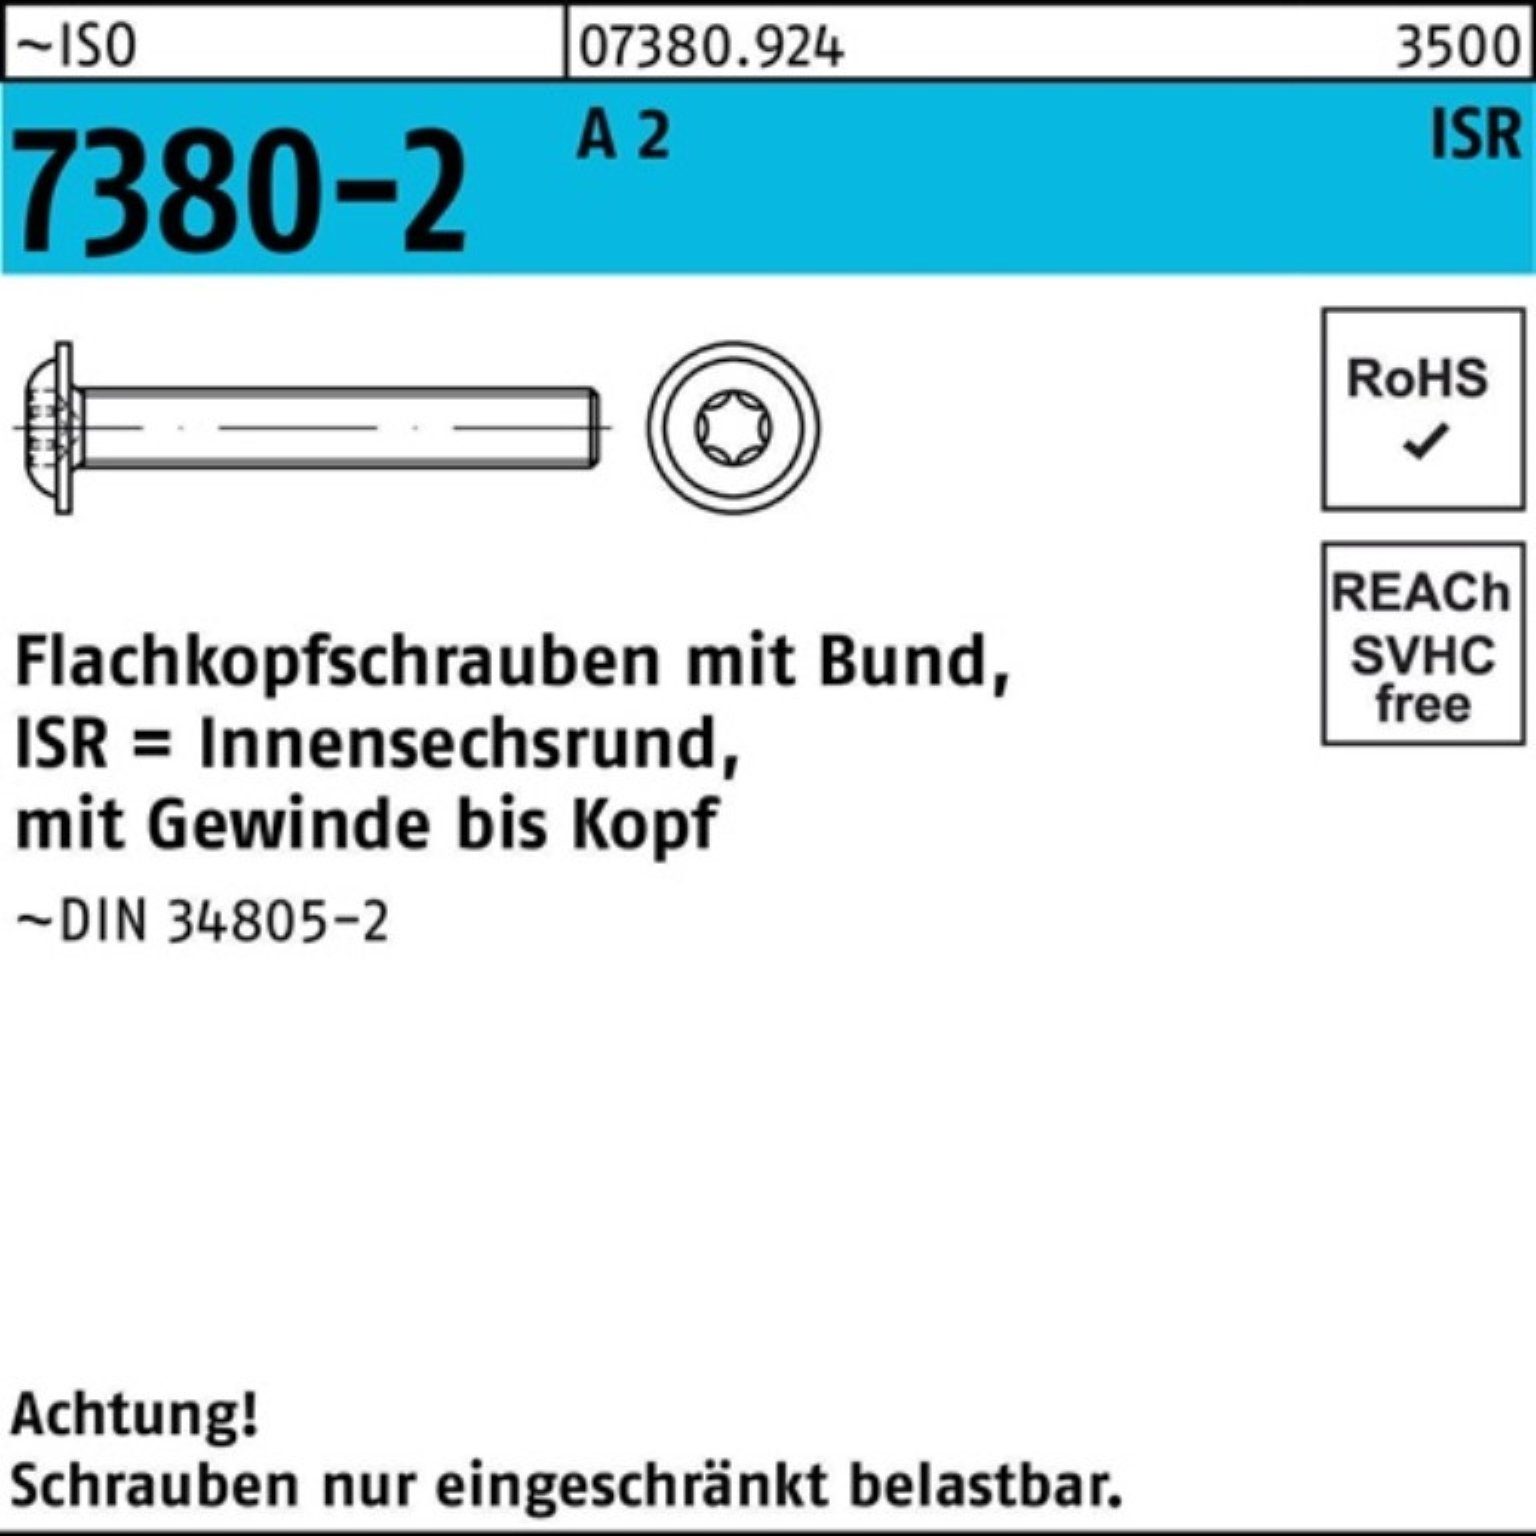 Bund/ISR 50-T30 200 VG Flachkopfschraube Schraube M6x Reyher ISO 200er 2 7380-2 Pack A